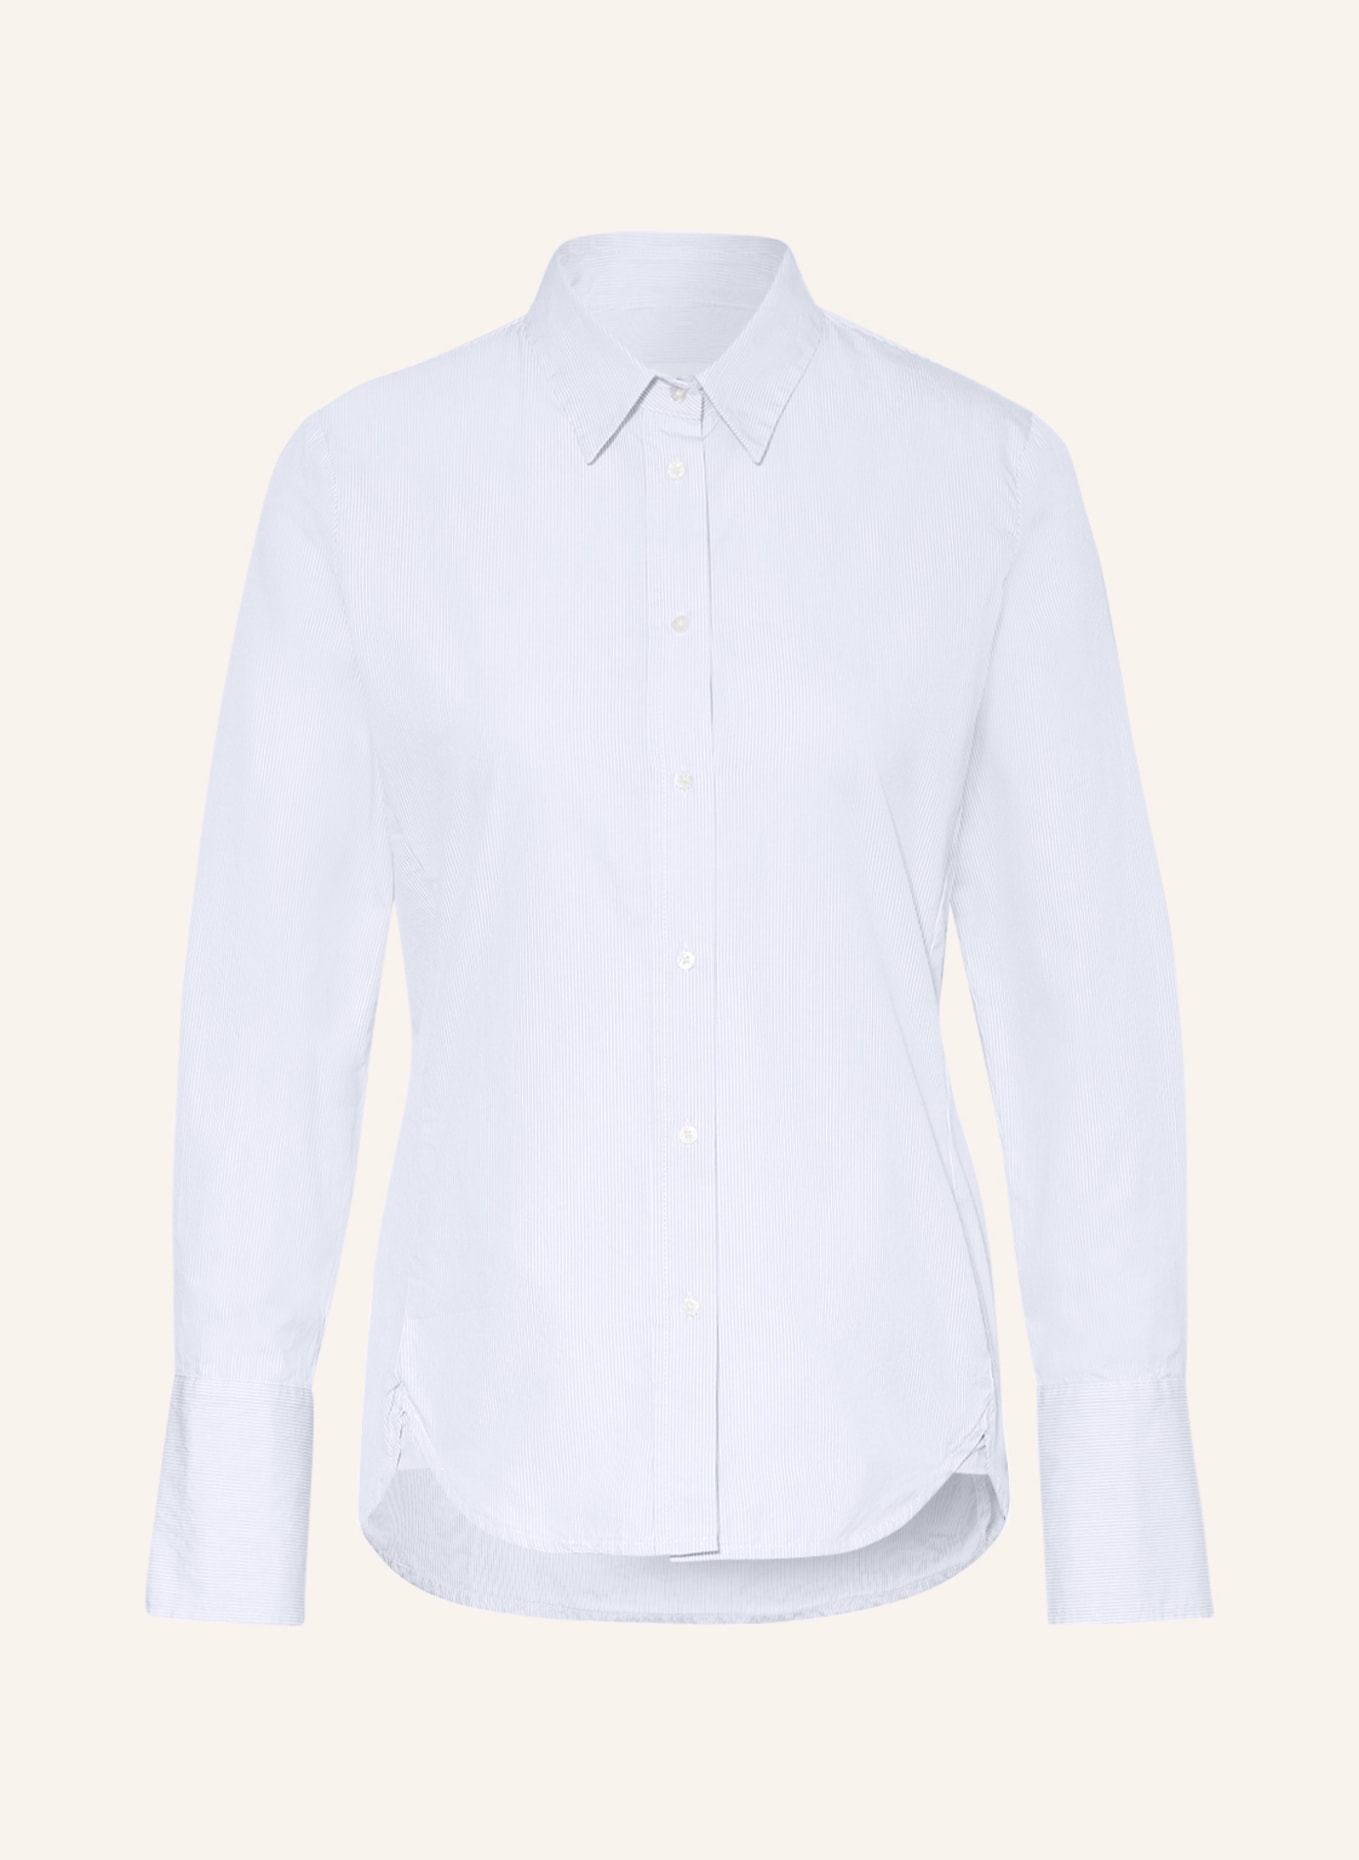 TONNO & PANNA Shirt blouse ELISABETH, Color: WHITE/ LIGHT BLUE (Image 1)